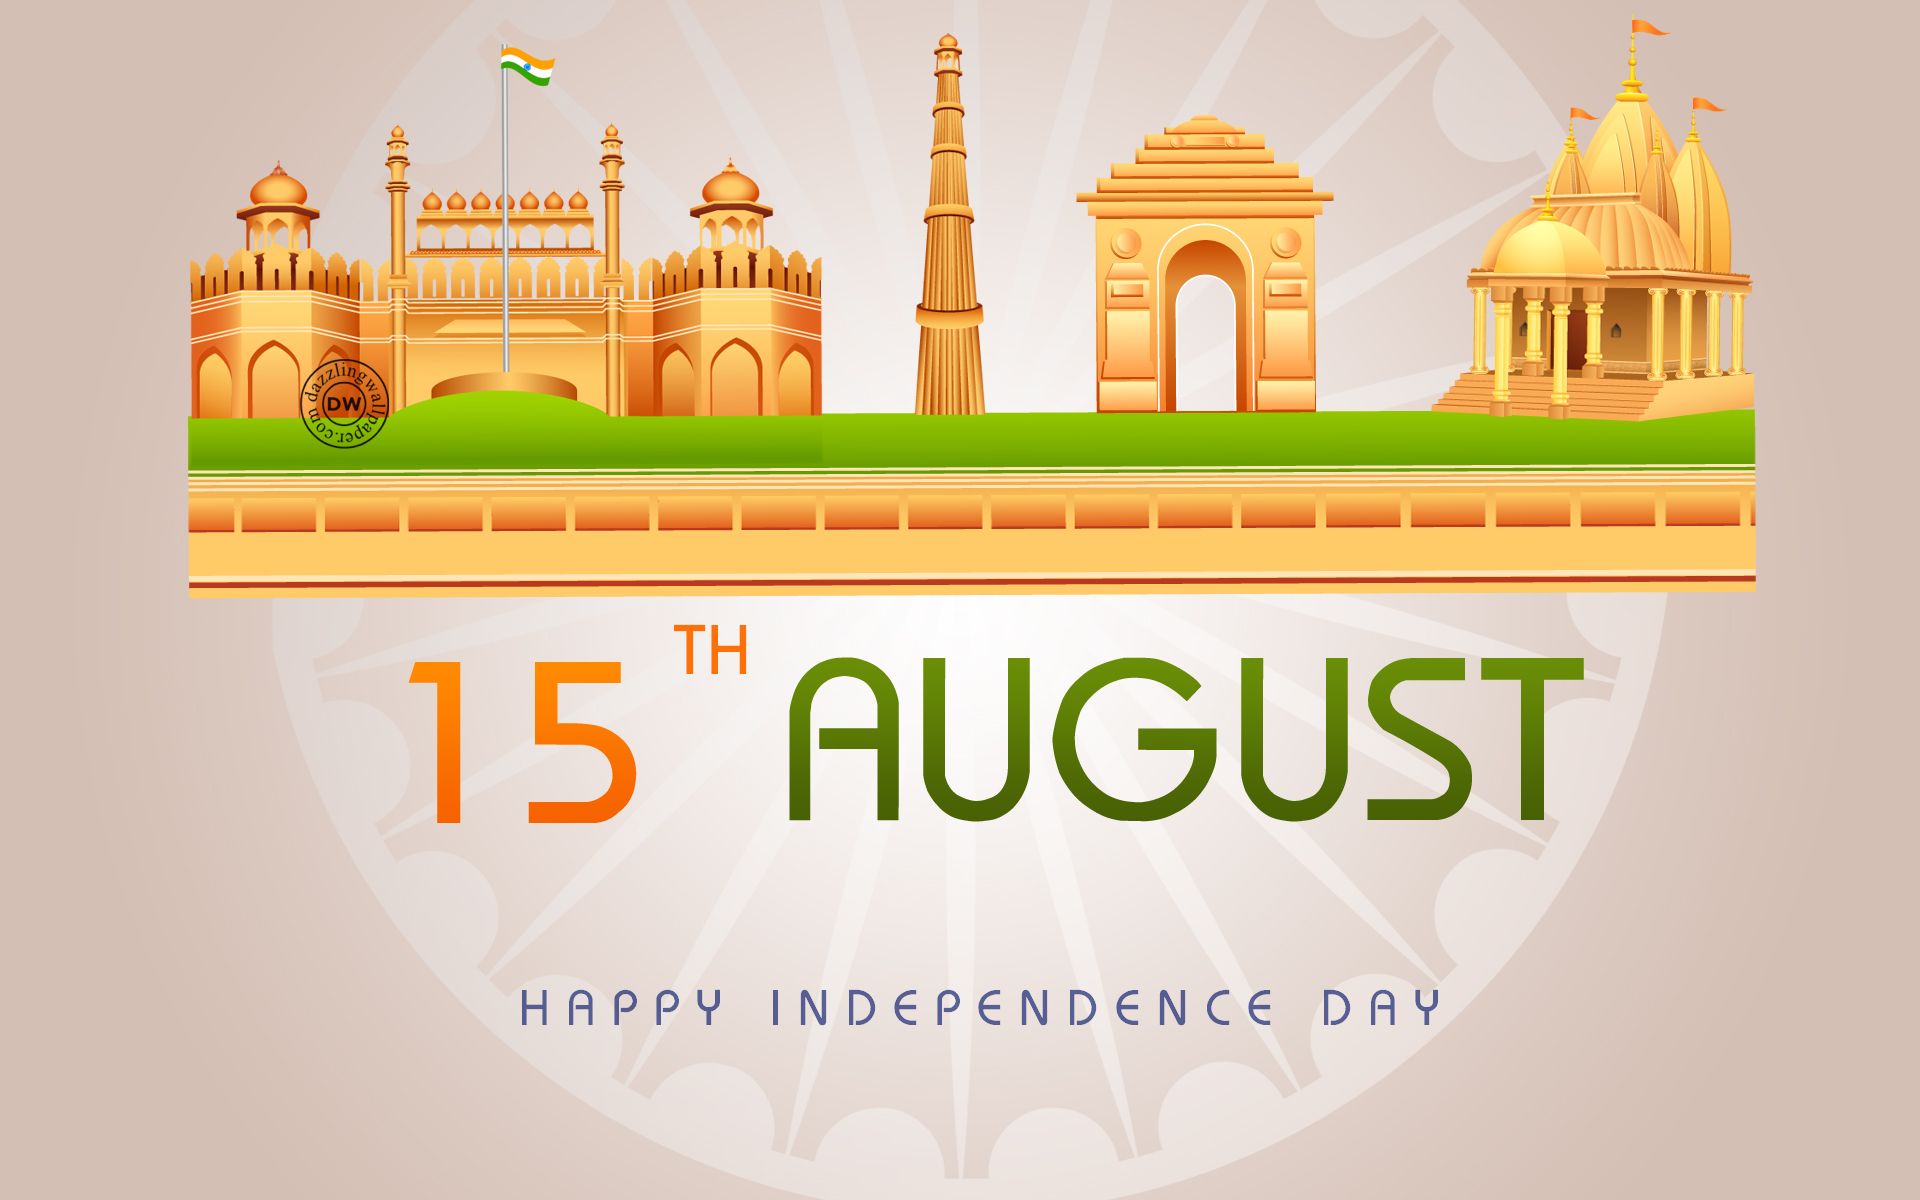 15 agosto festa dell'indipendenza wallpaper hd,design,grafica,illustrazione,font,luogo di culto